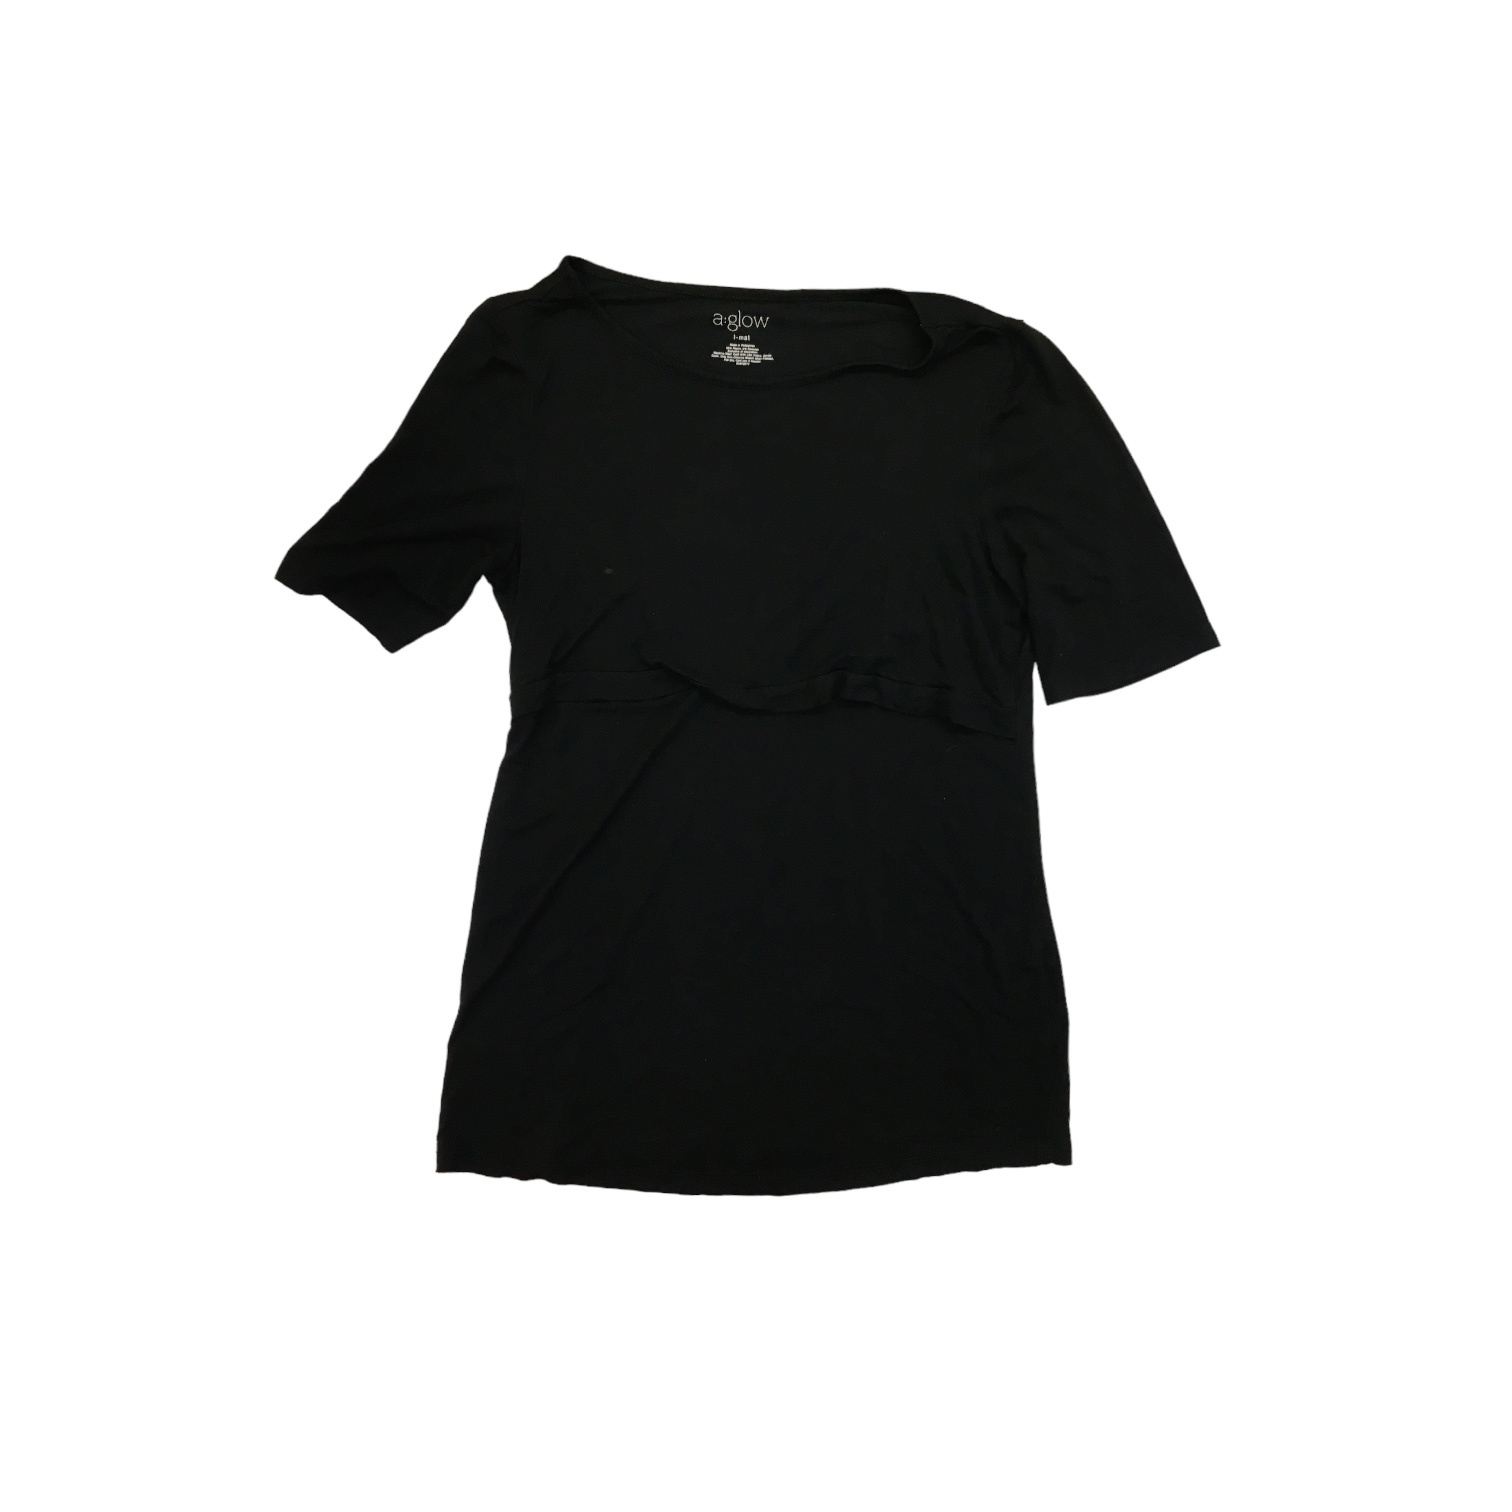 Vintage Black Lace Up Dress ASO Rachel Green On Friends Rare Alt. Version